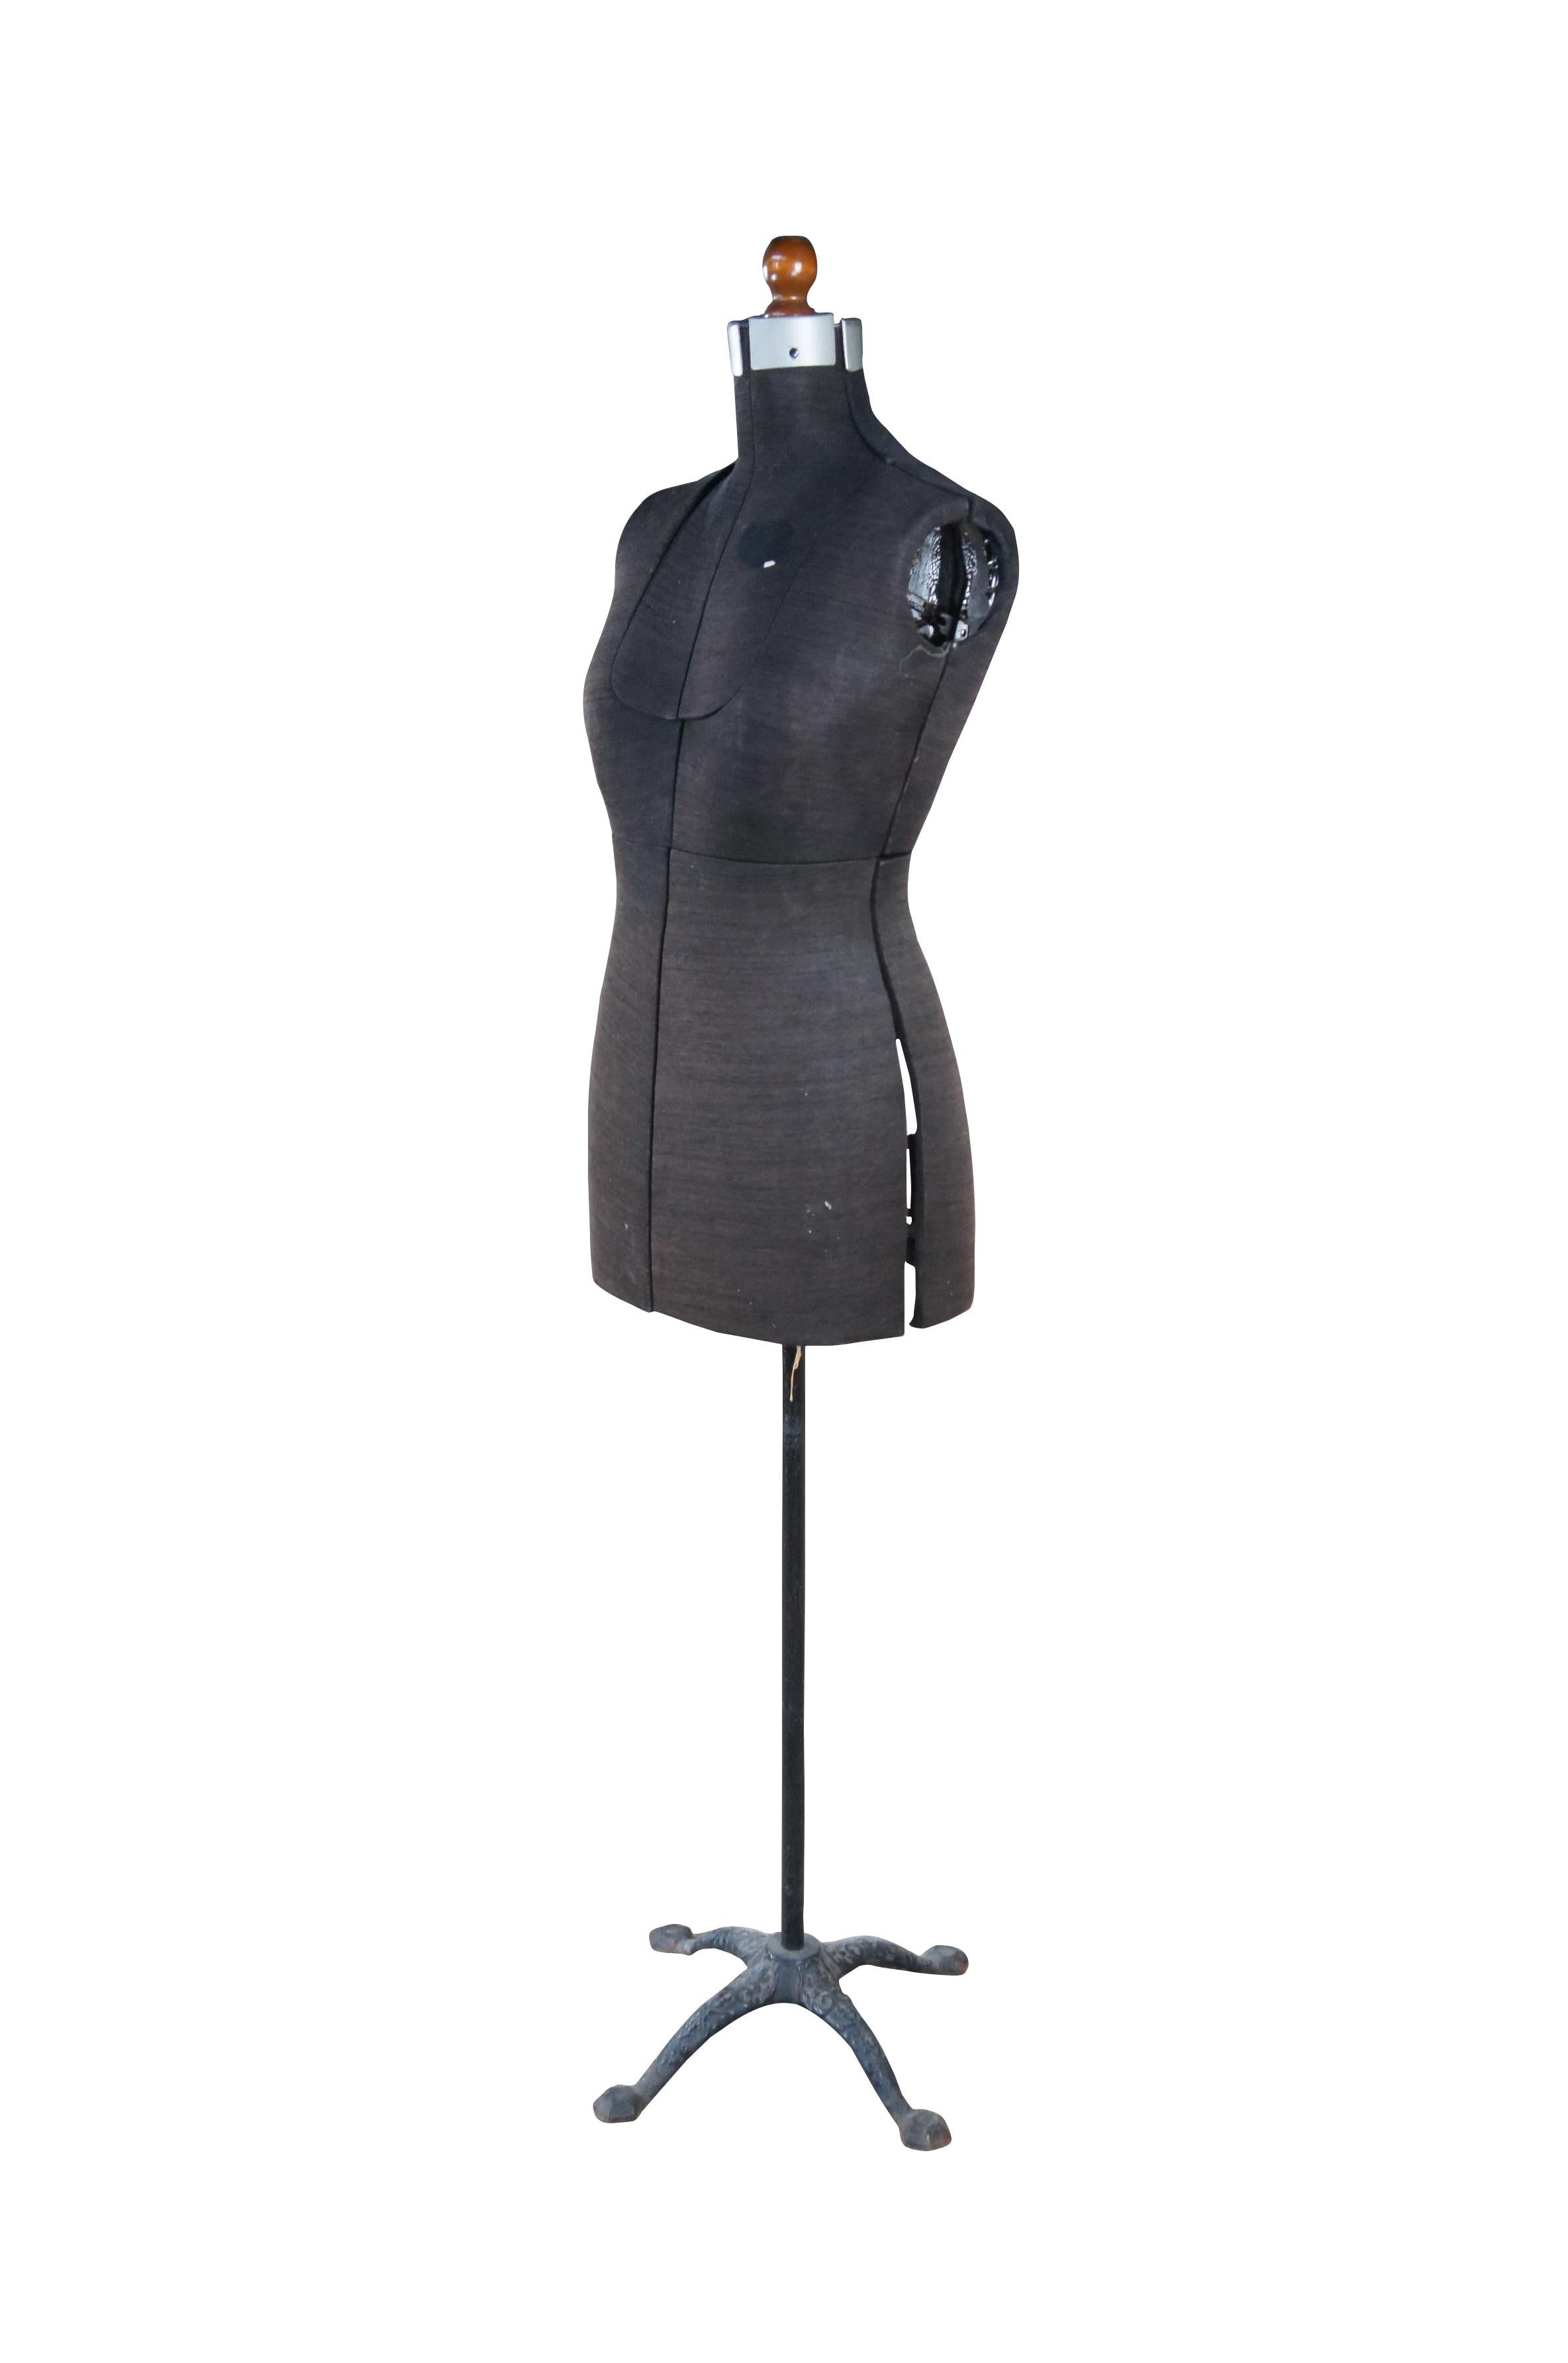 Antikes, vollständig verstellbares weibliches Kleid in Form eines Mannequins auf Gusseisensockels 63